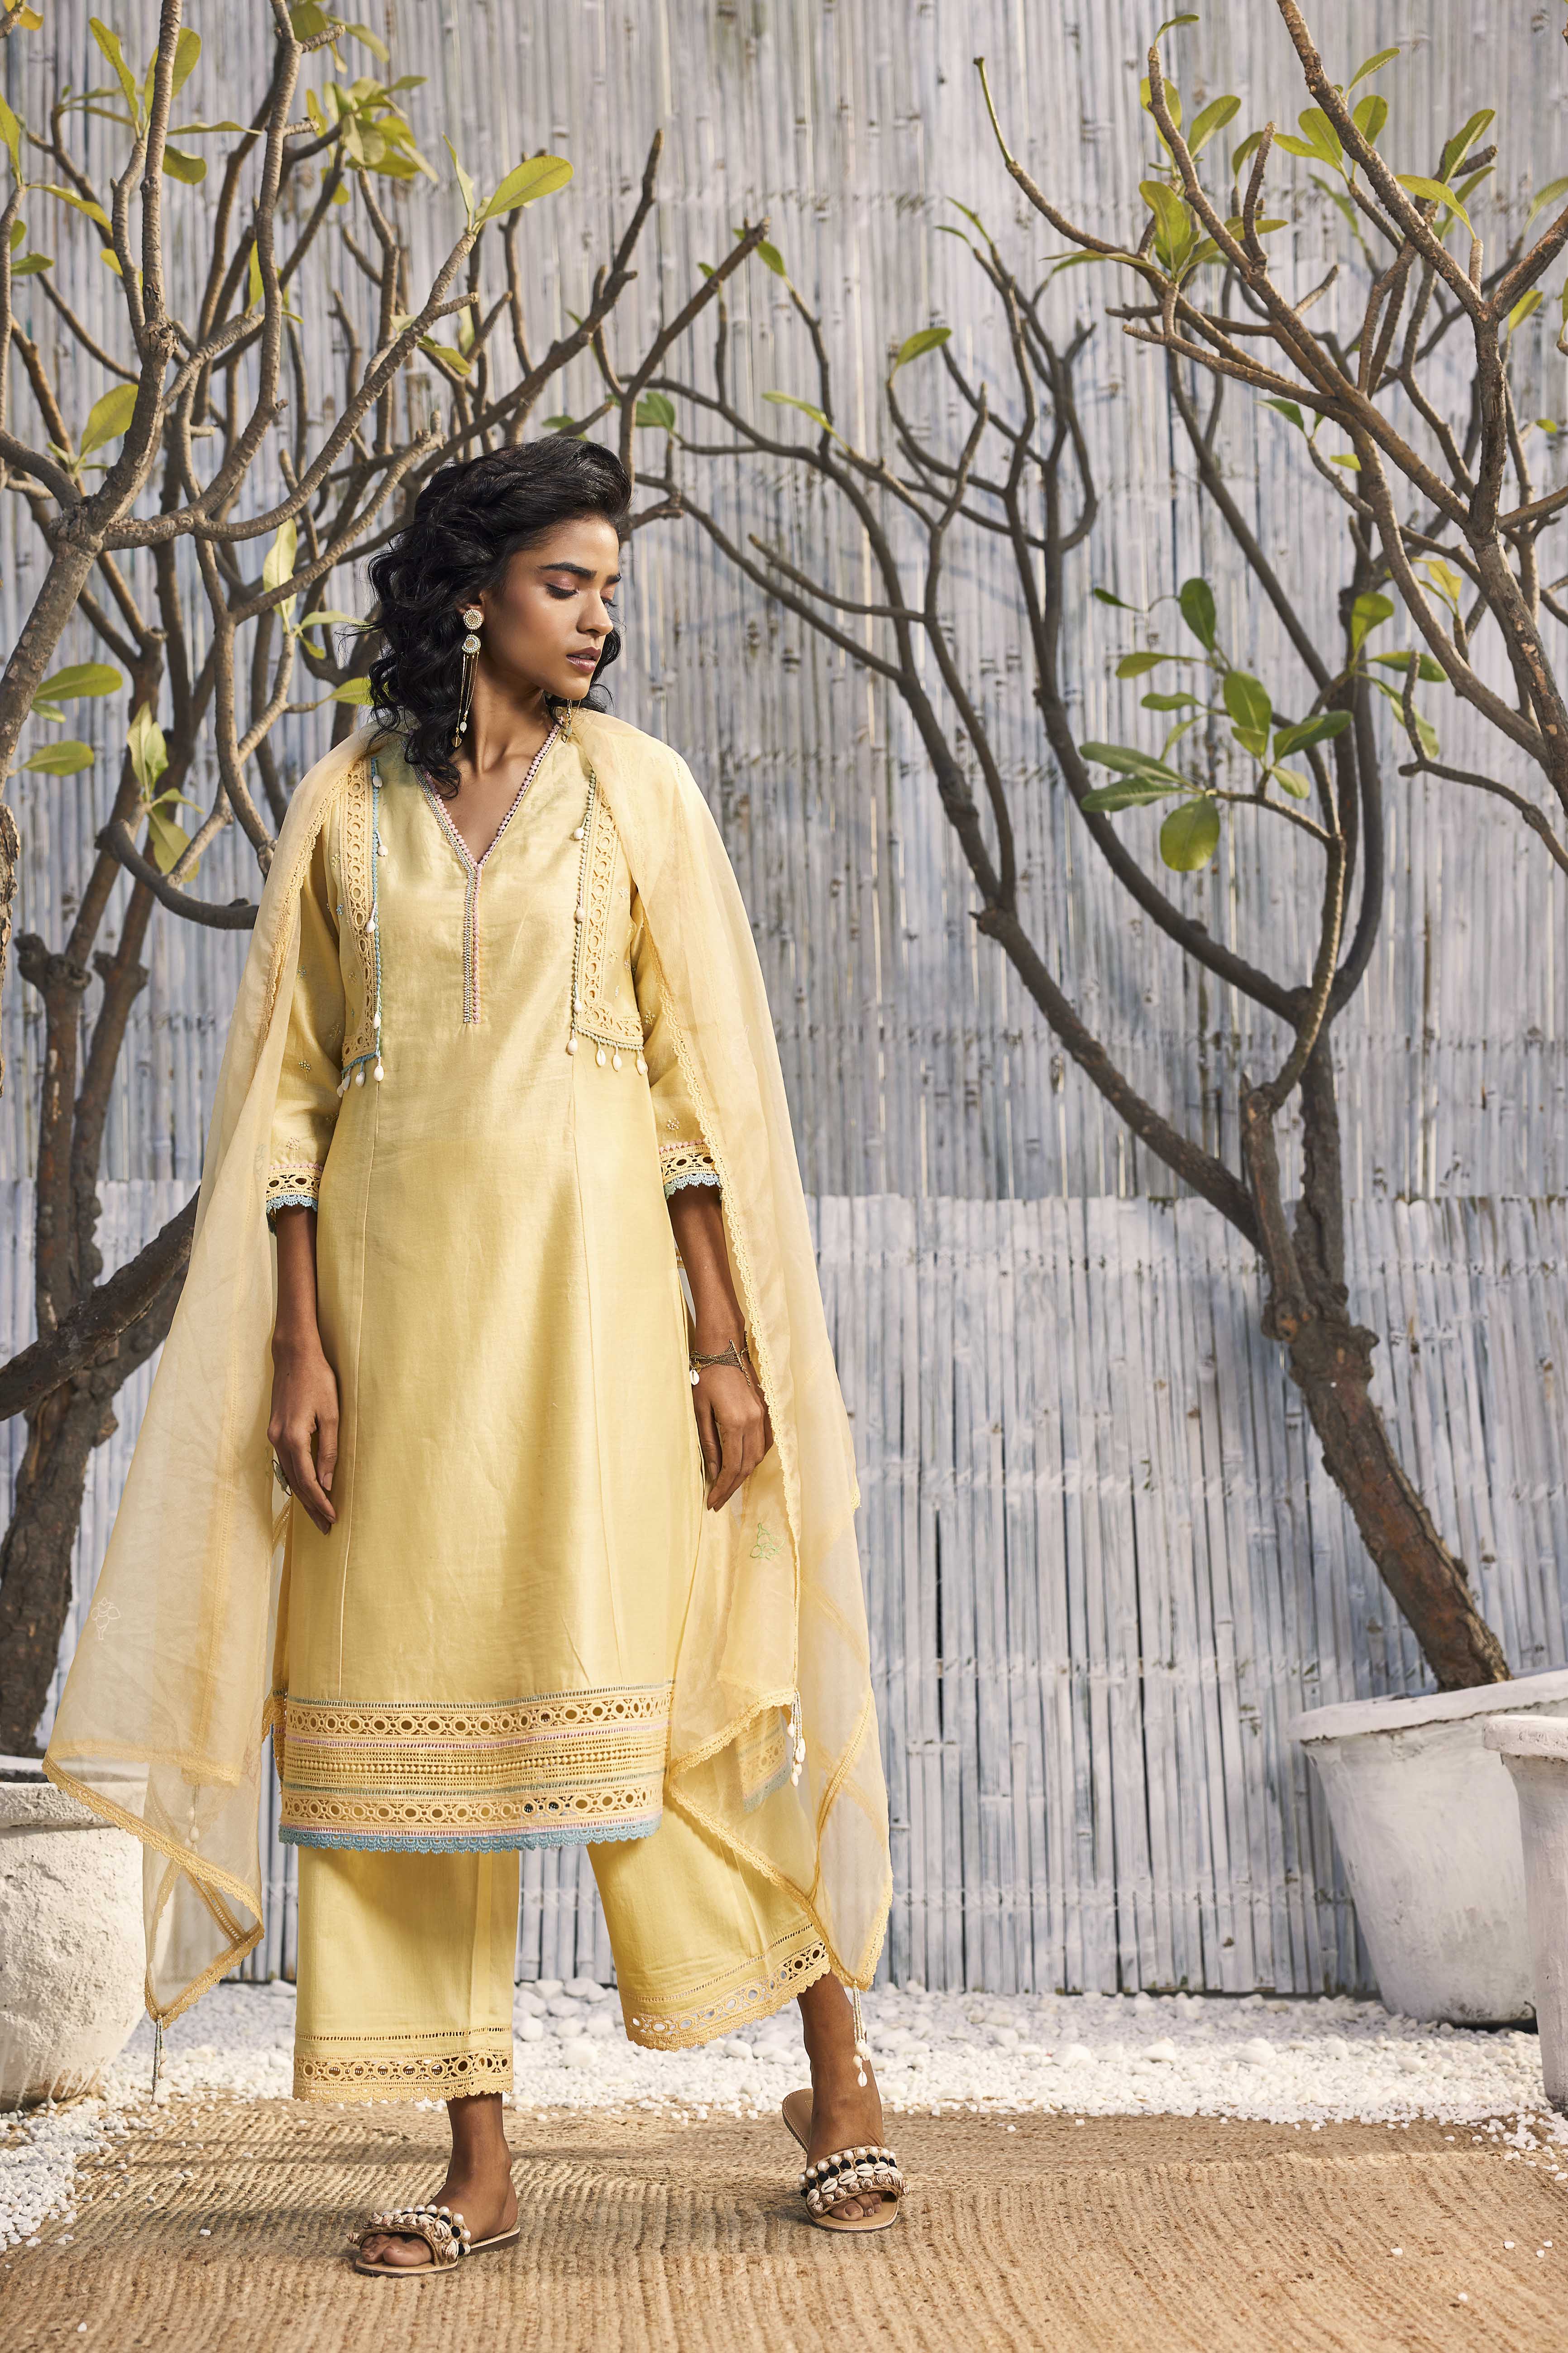 Yellow Printed Work Straight Kurta Palazzo & Dupatta Women Designers Salwar  Suit | eBay